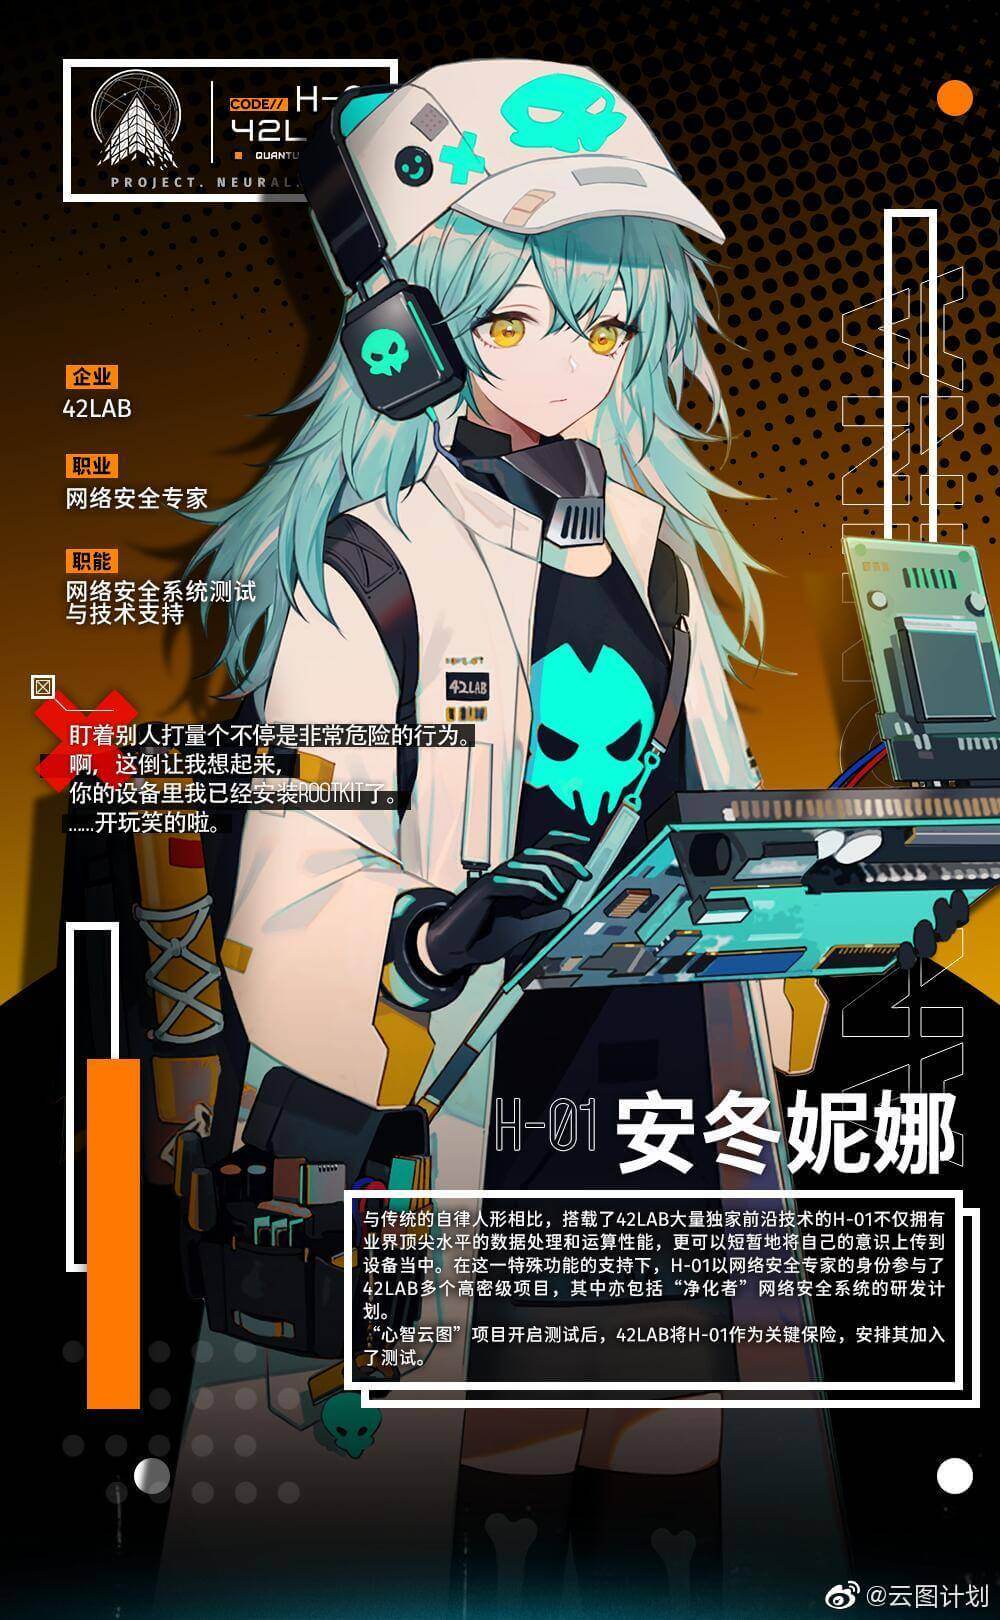 H-01 profile image